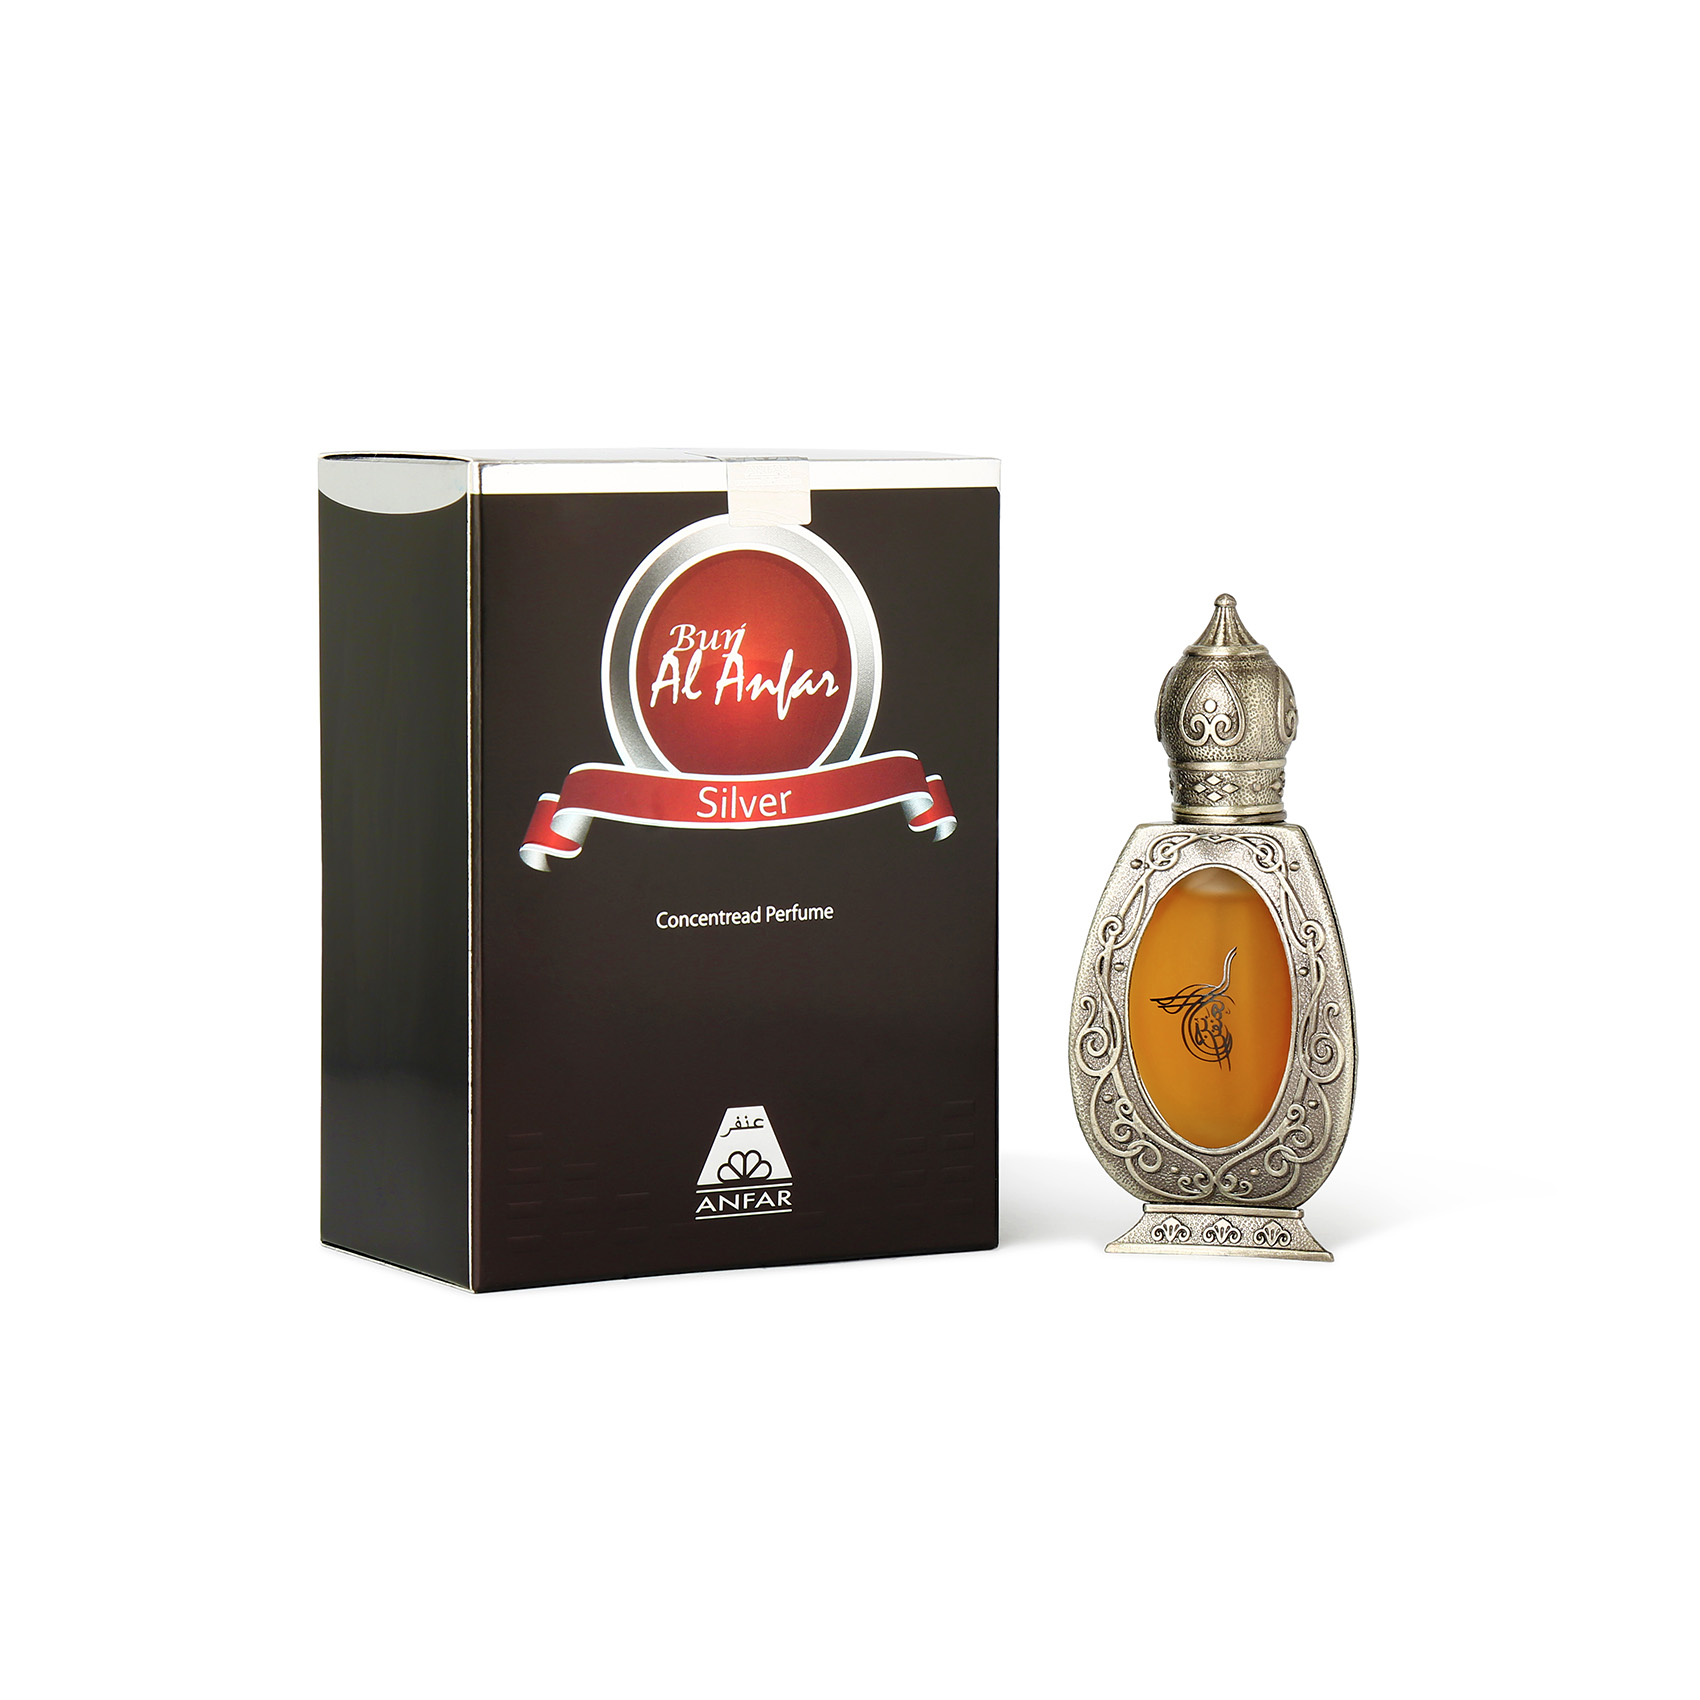 Burj Al Anfar Silver Cp 20 ml Perfume For Men & Women By Anfar